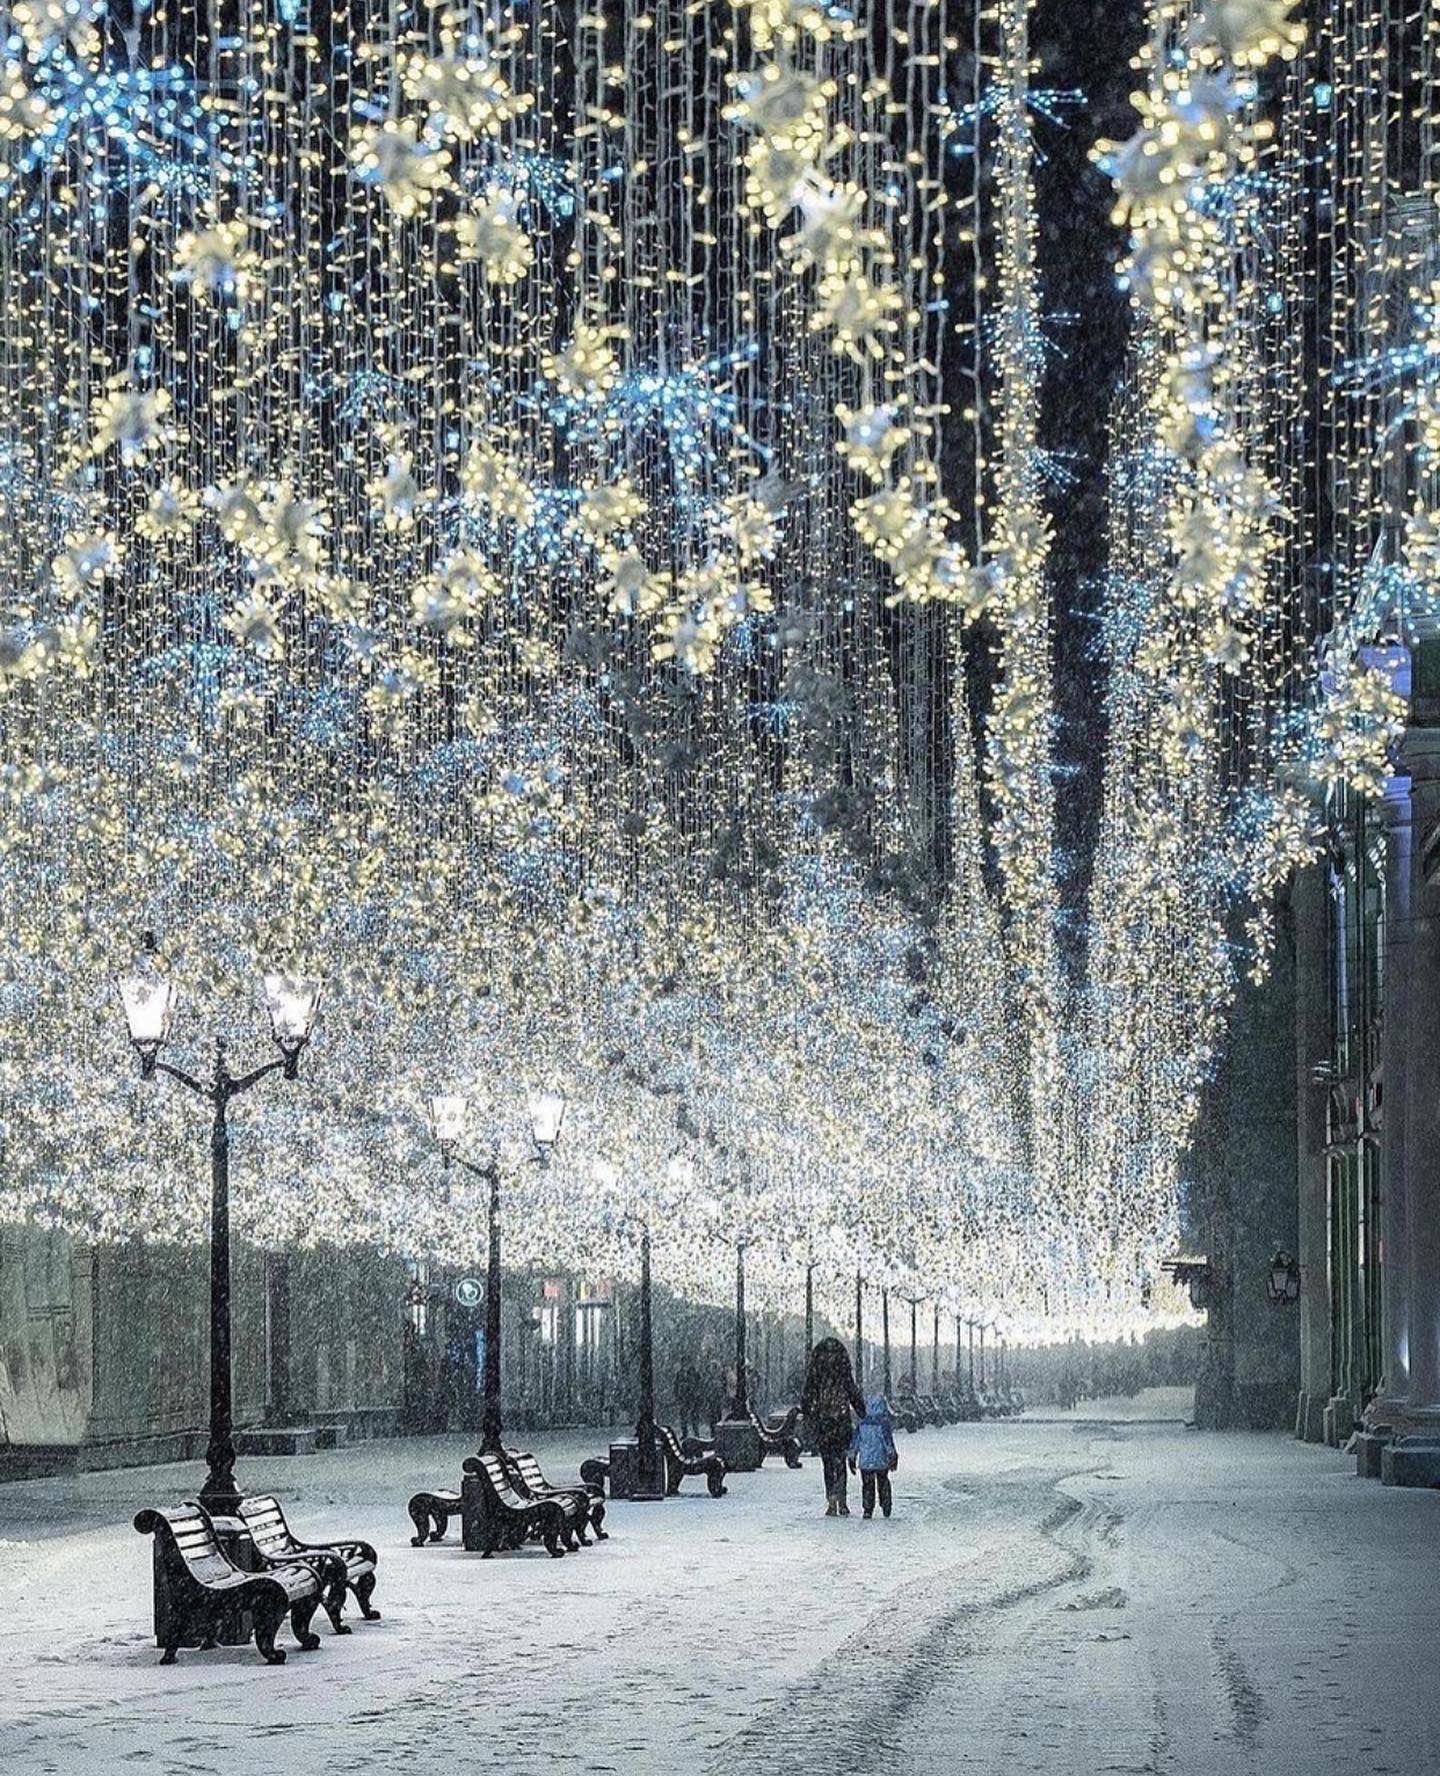 Χριστουγεννιάτικα φώτα της Μόσχας, Ρωσία από την @elena.krizhevskaya #bestintravel #tra... 1